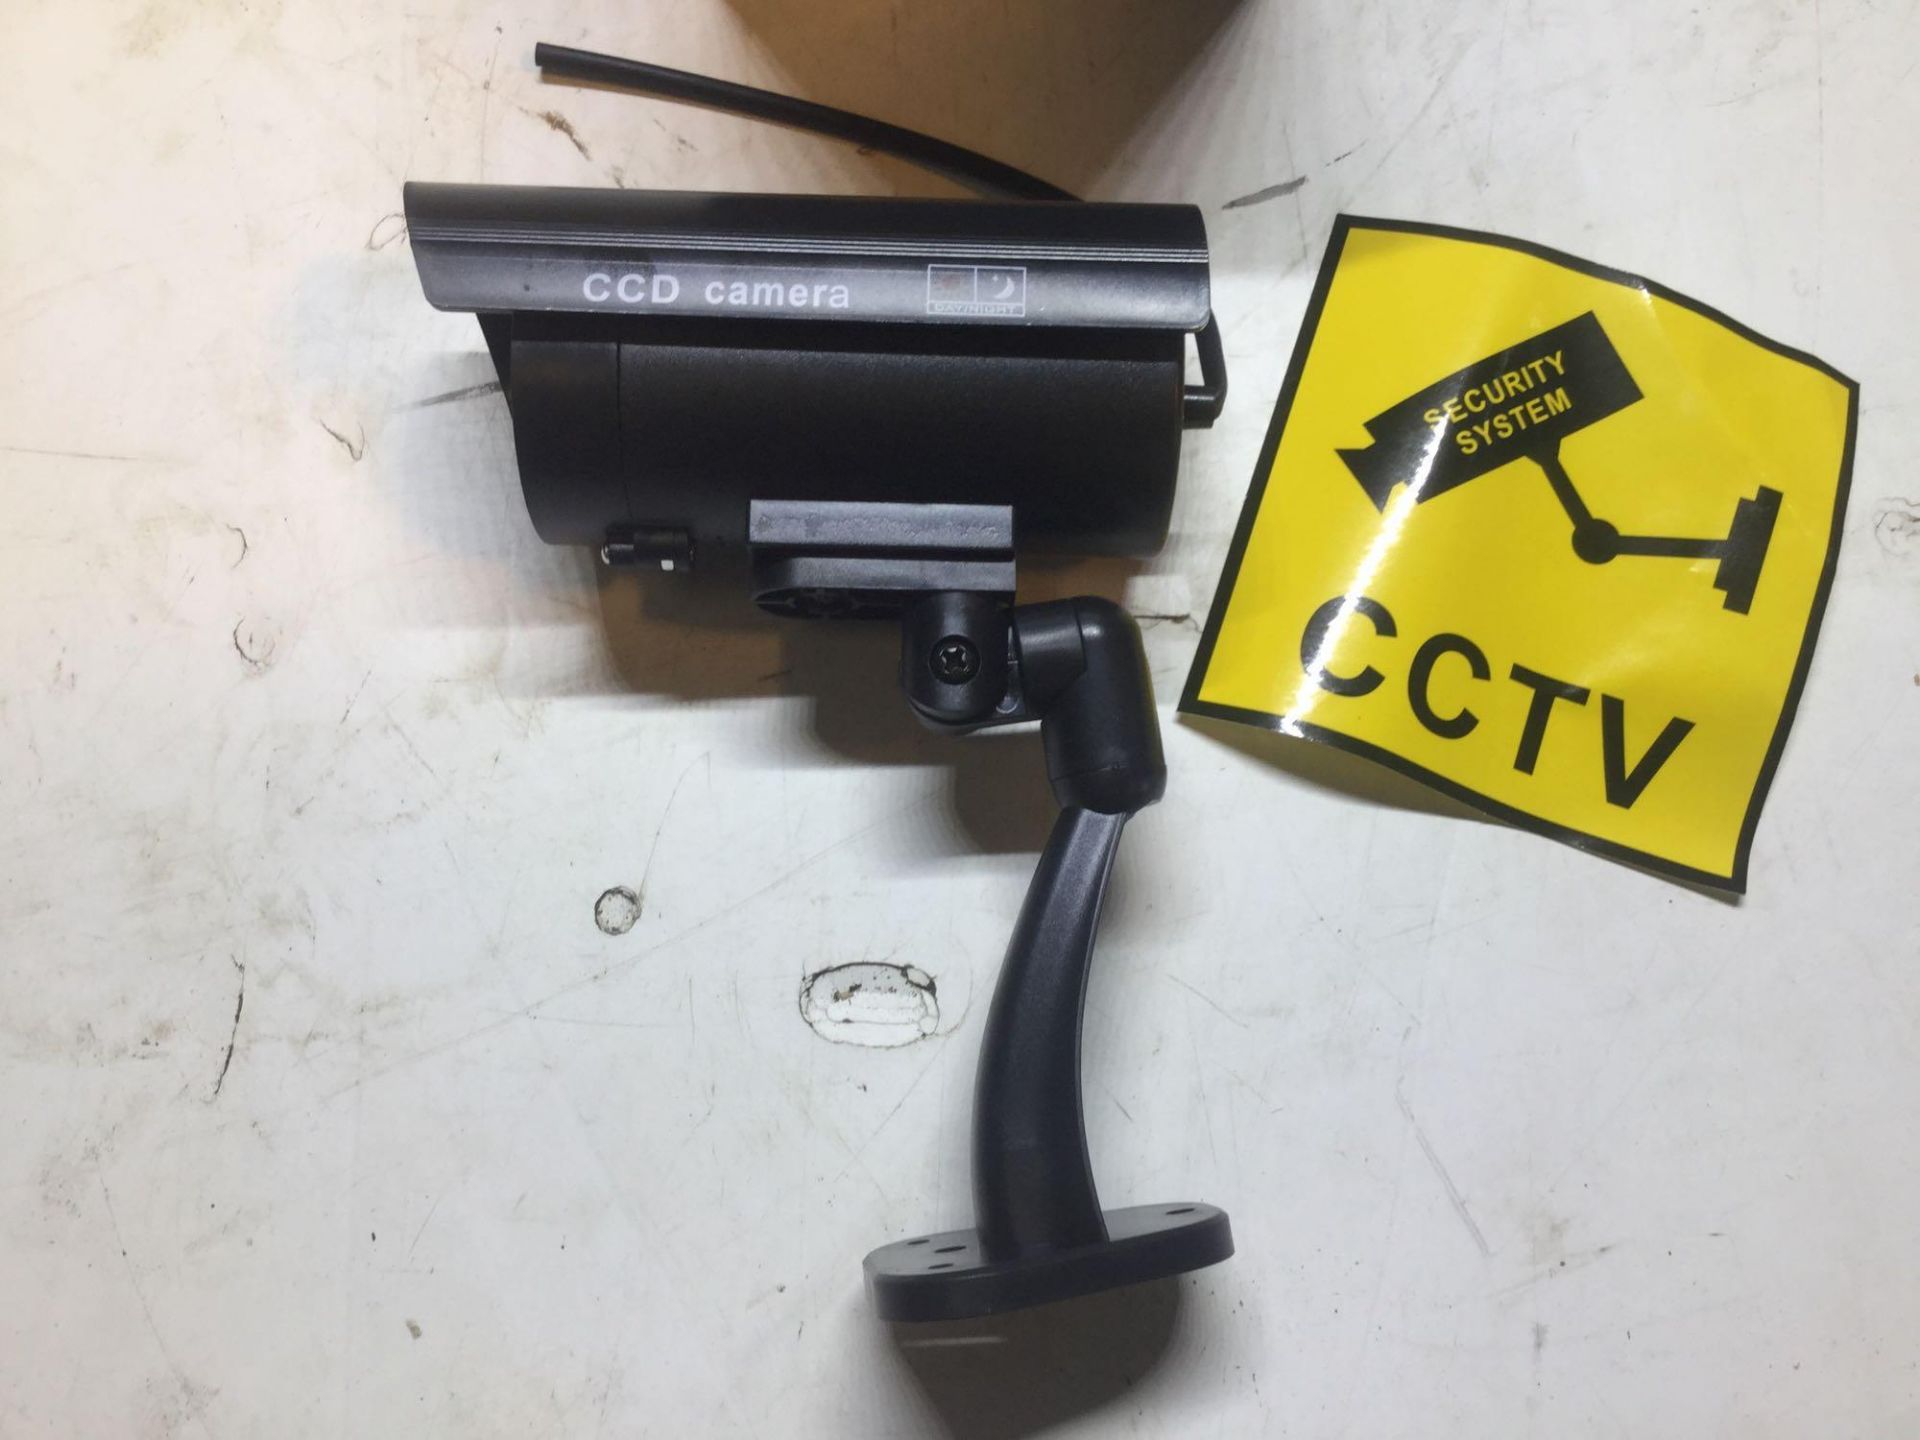 X5 Dummy CCTV Cameras With Flashing LED - Image 2 of 5